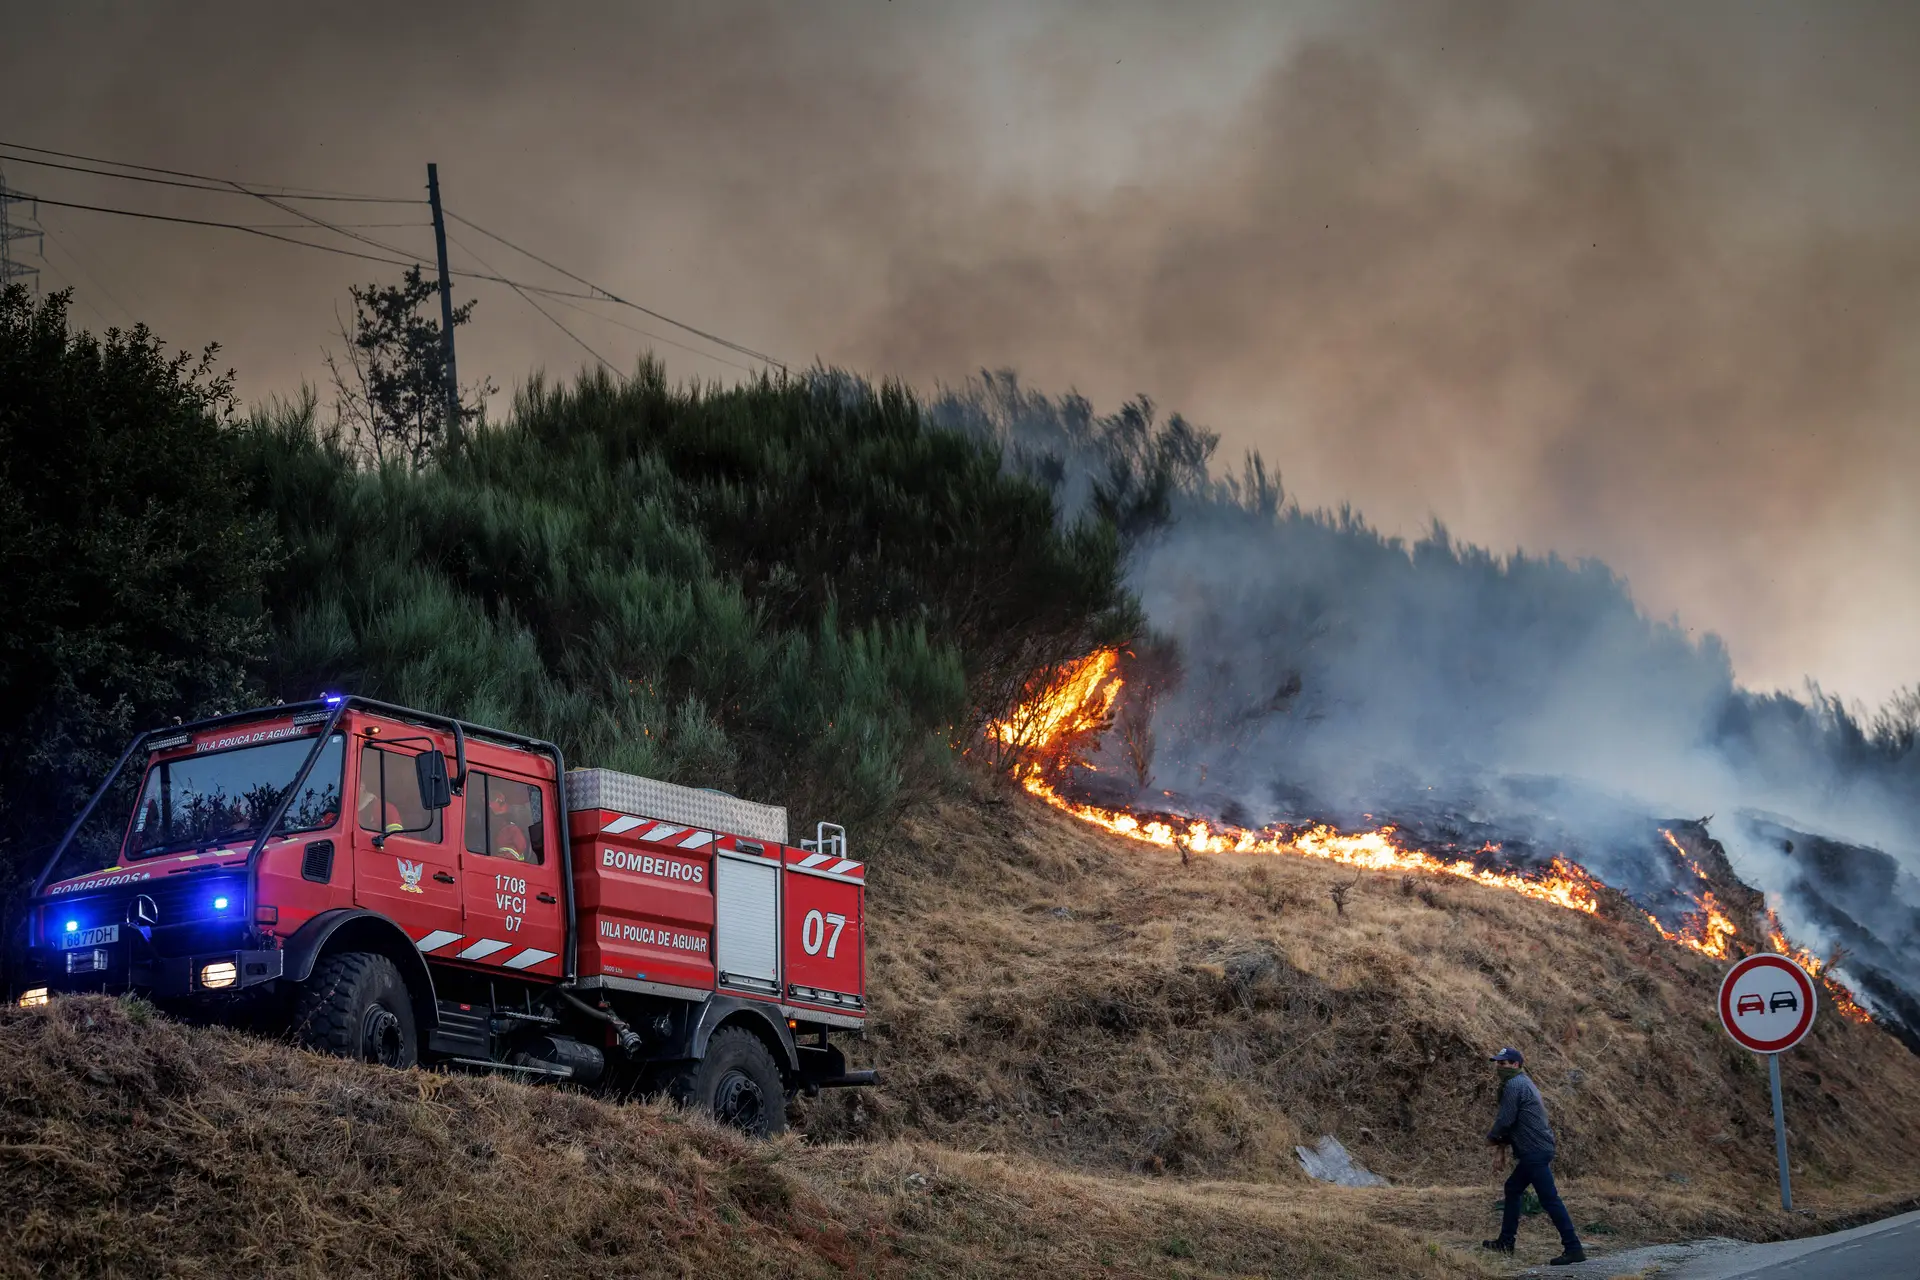 Quatro incêndios lavram em zonais rurais. Fogo de Casteleira é o que merece mais atenção, diz Proteção Civil